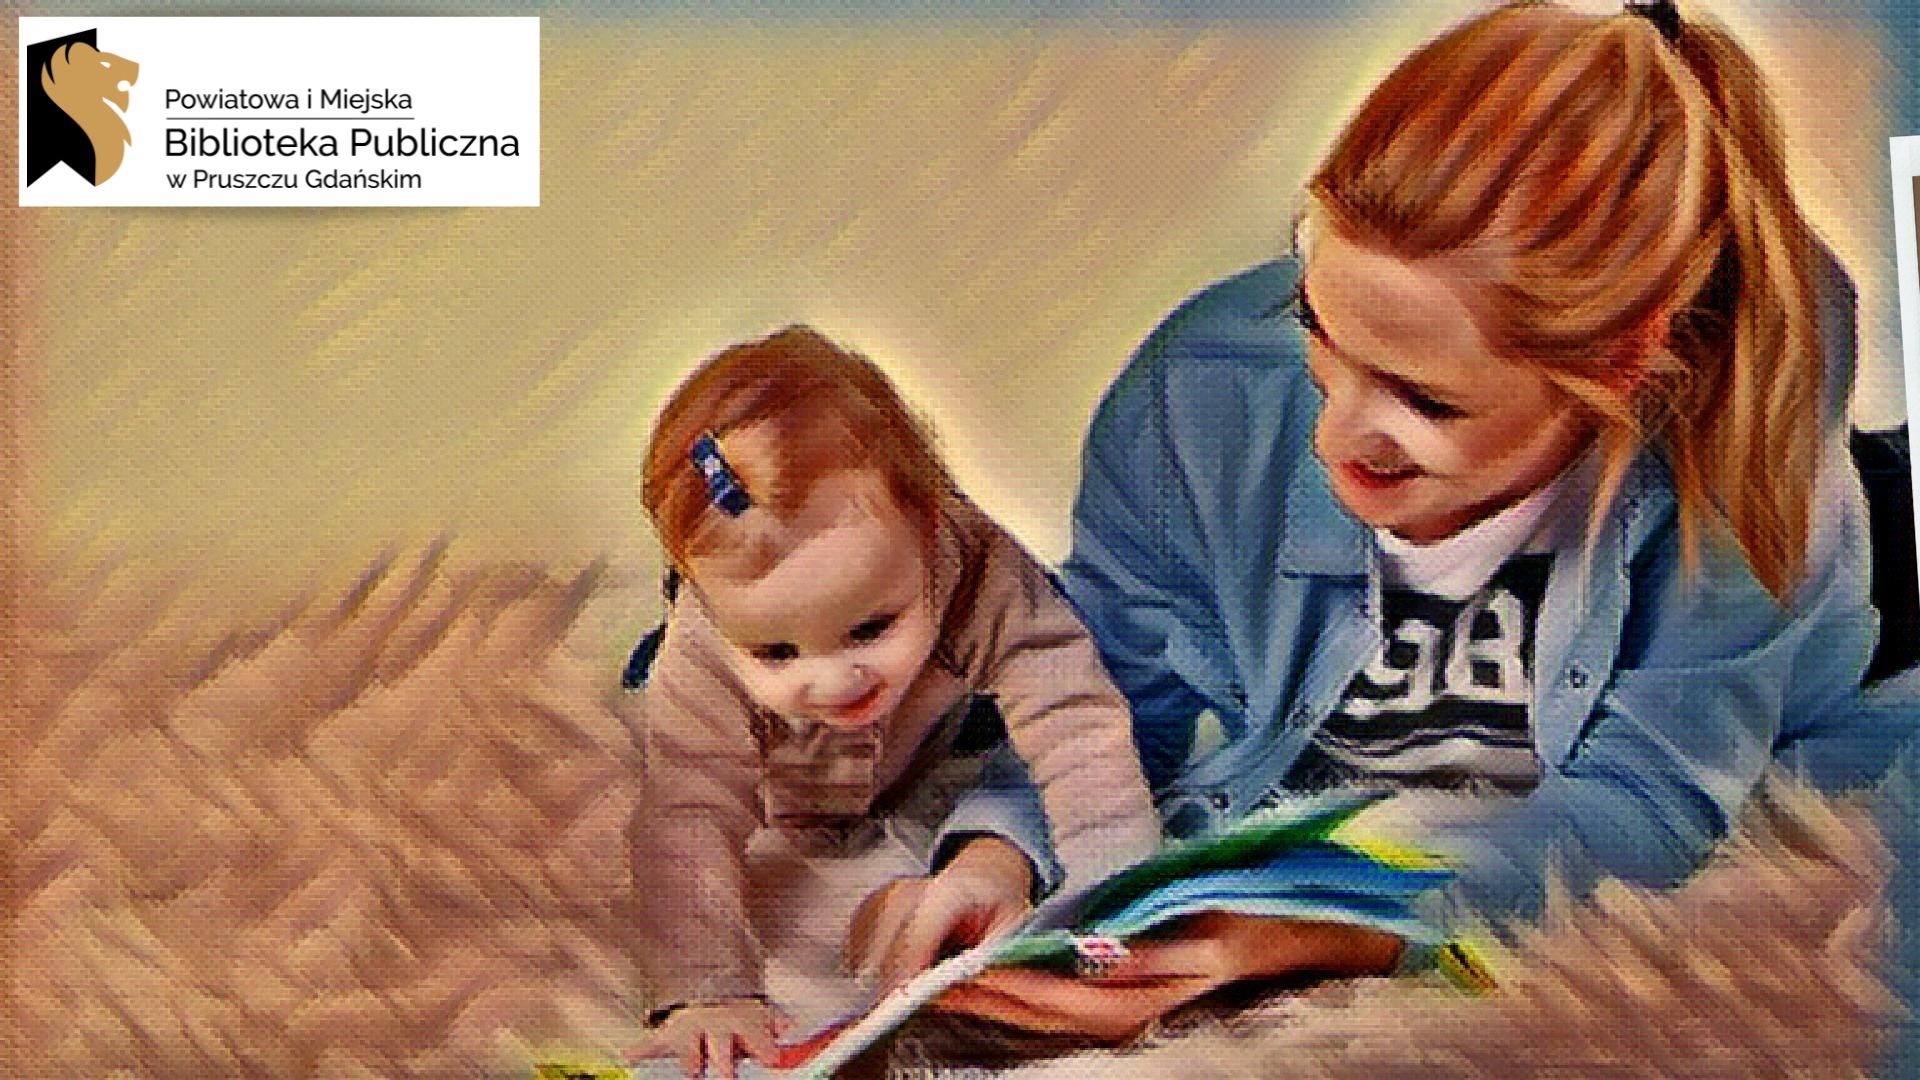 Napisy: Powiatowa i Miejska Biblioteka Publiczna w Pruszczu Gdańskim, spotkania z książką oraz grafika przedstawiająca książki, kobietę i małe dziecko patrzące w otwartą książkę.